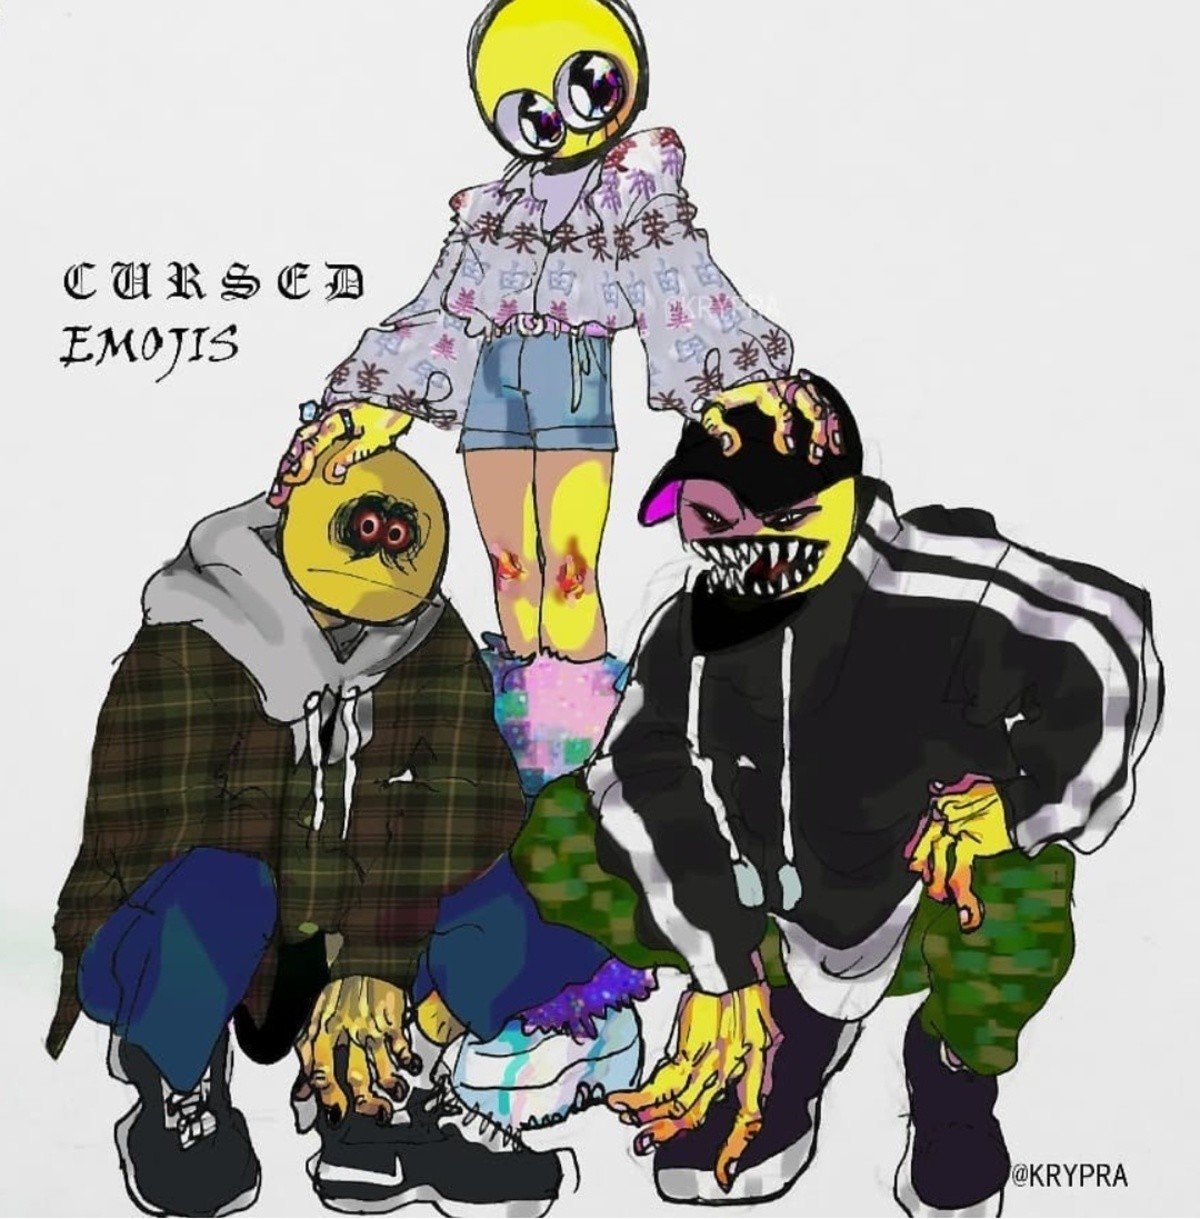 Cursed Emoji #1 : r/cursedemojis